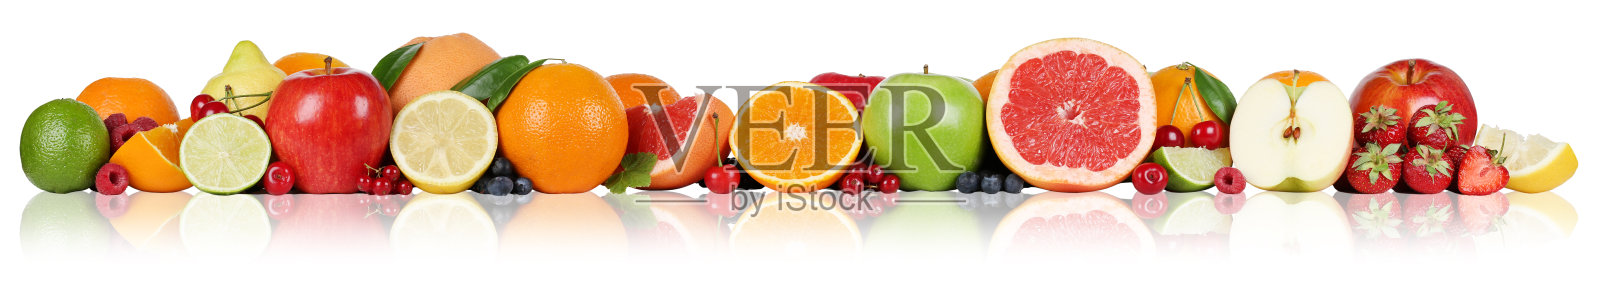 水果边橘子，柠檬，苹果，浆果，草莓排成一排照片摄影图片